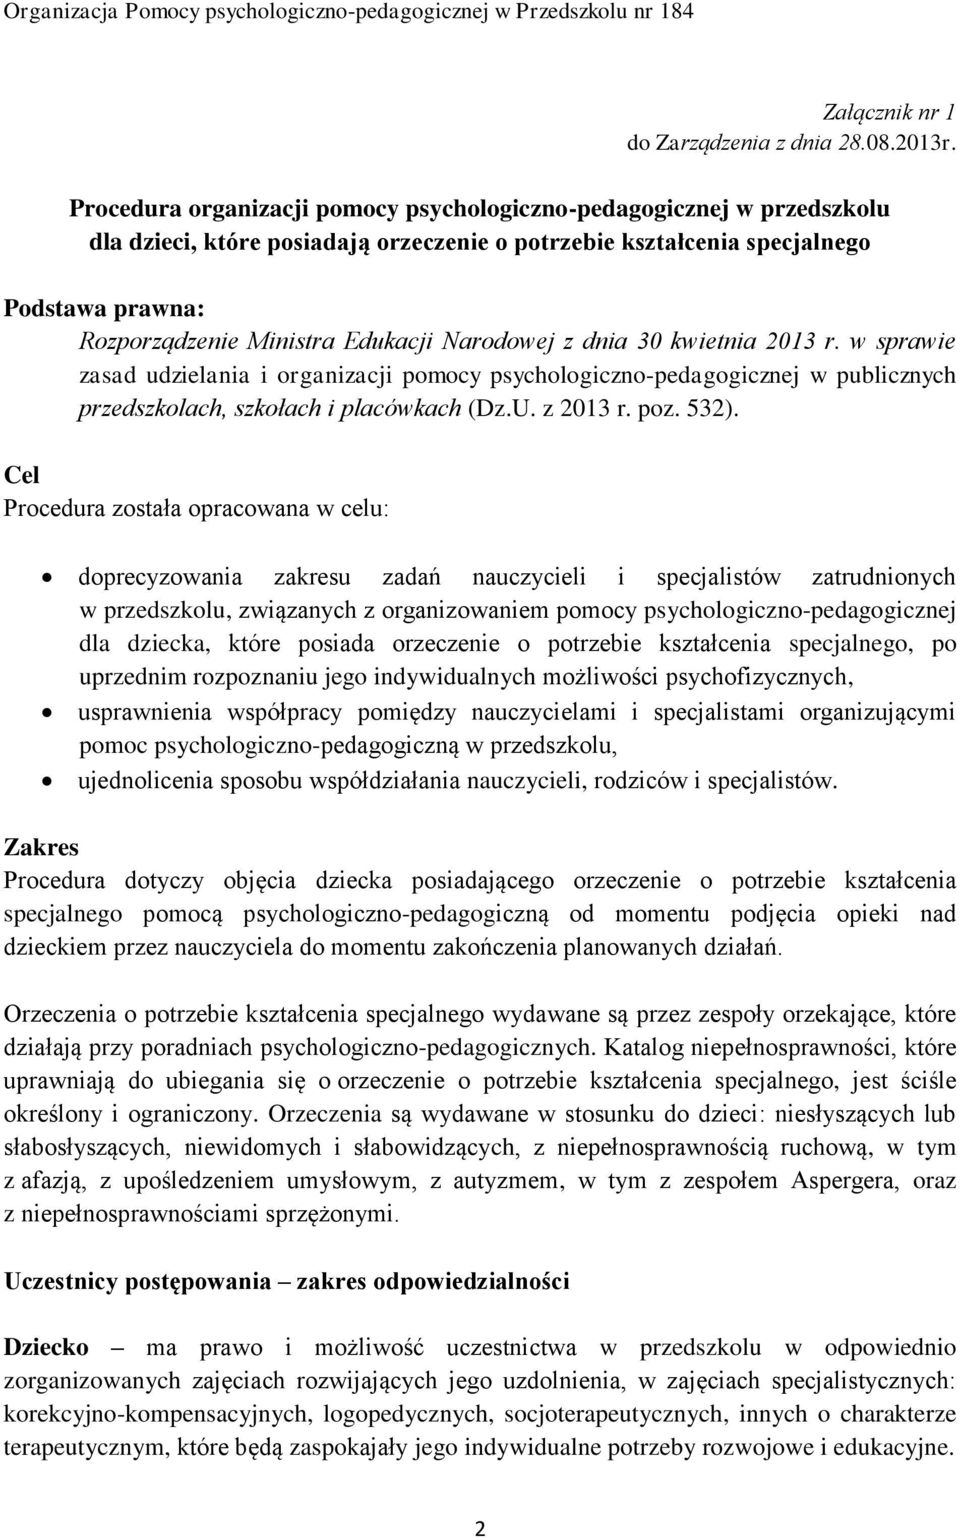 Narodowej z dnia 30 kwietnia 2013 r. w sprawie zasad udzielania i organizacji pomocy psychologiczno-pedagogicznej w publicznych przedszkolach, szkołach i placówkach (Dz.U. z 2013 r. poz. 532).